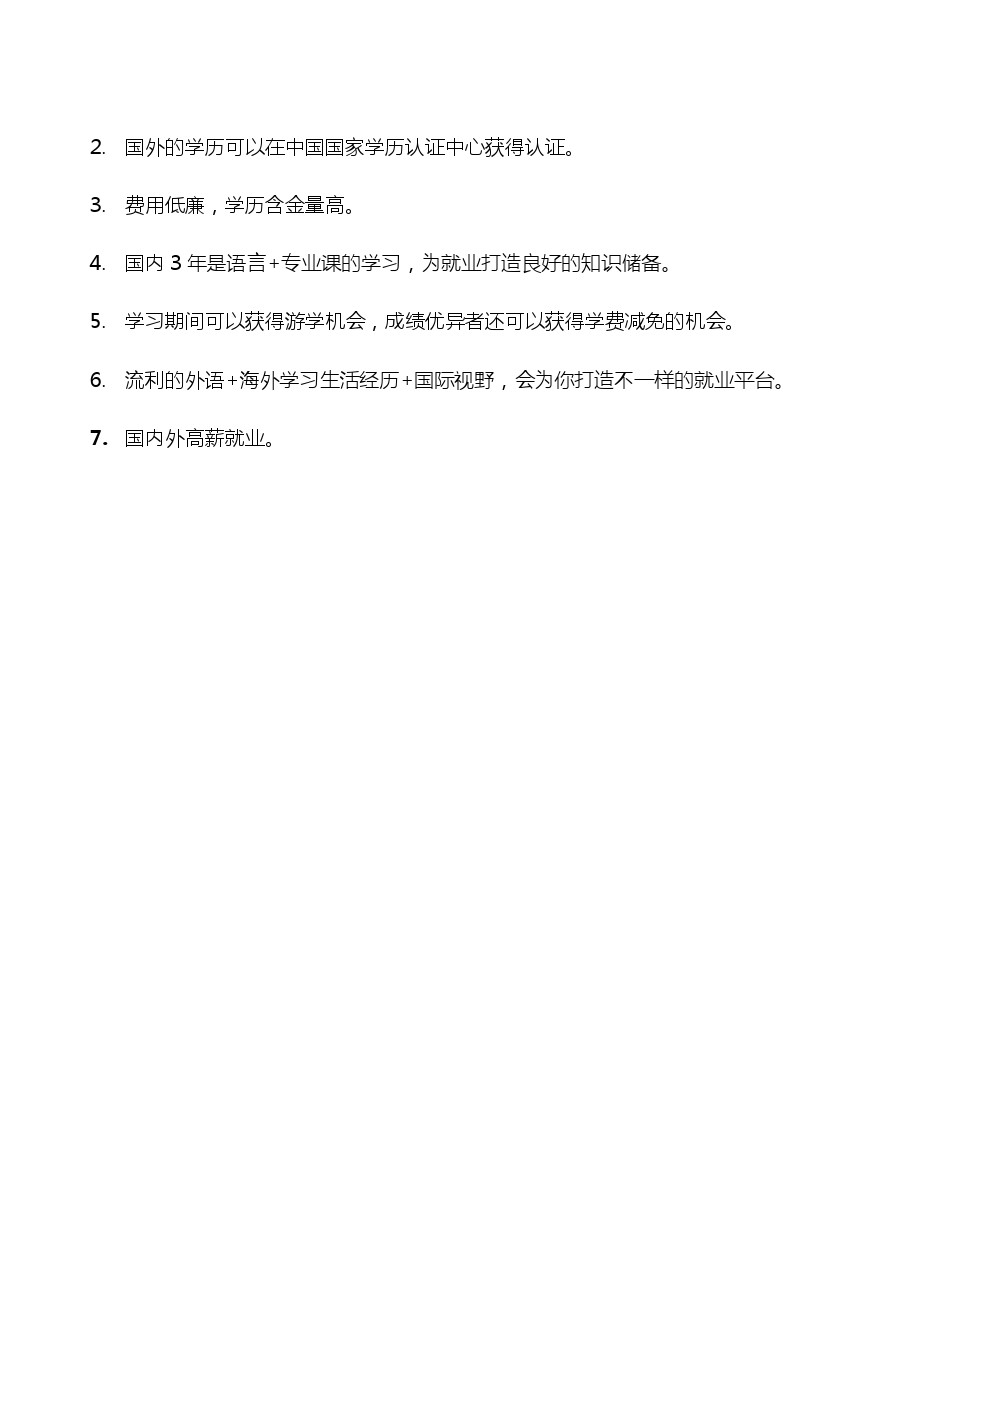 河北App职业技术学院国际班招生简章 